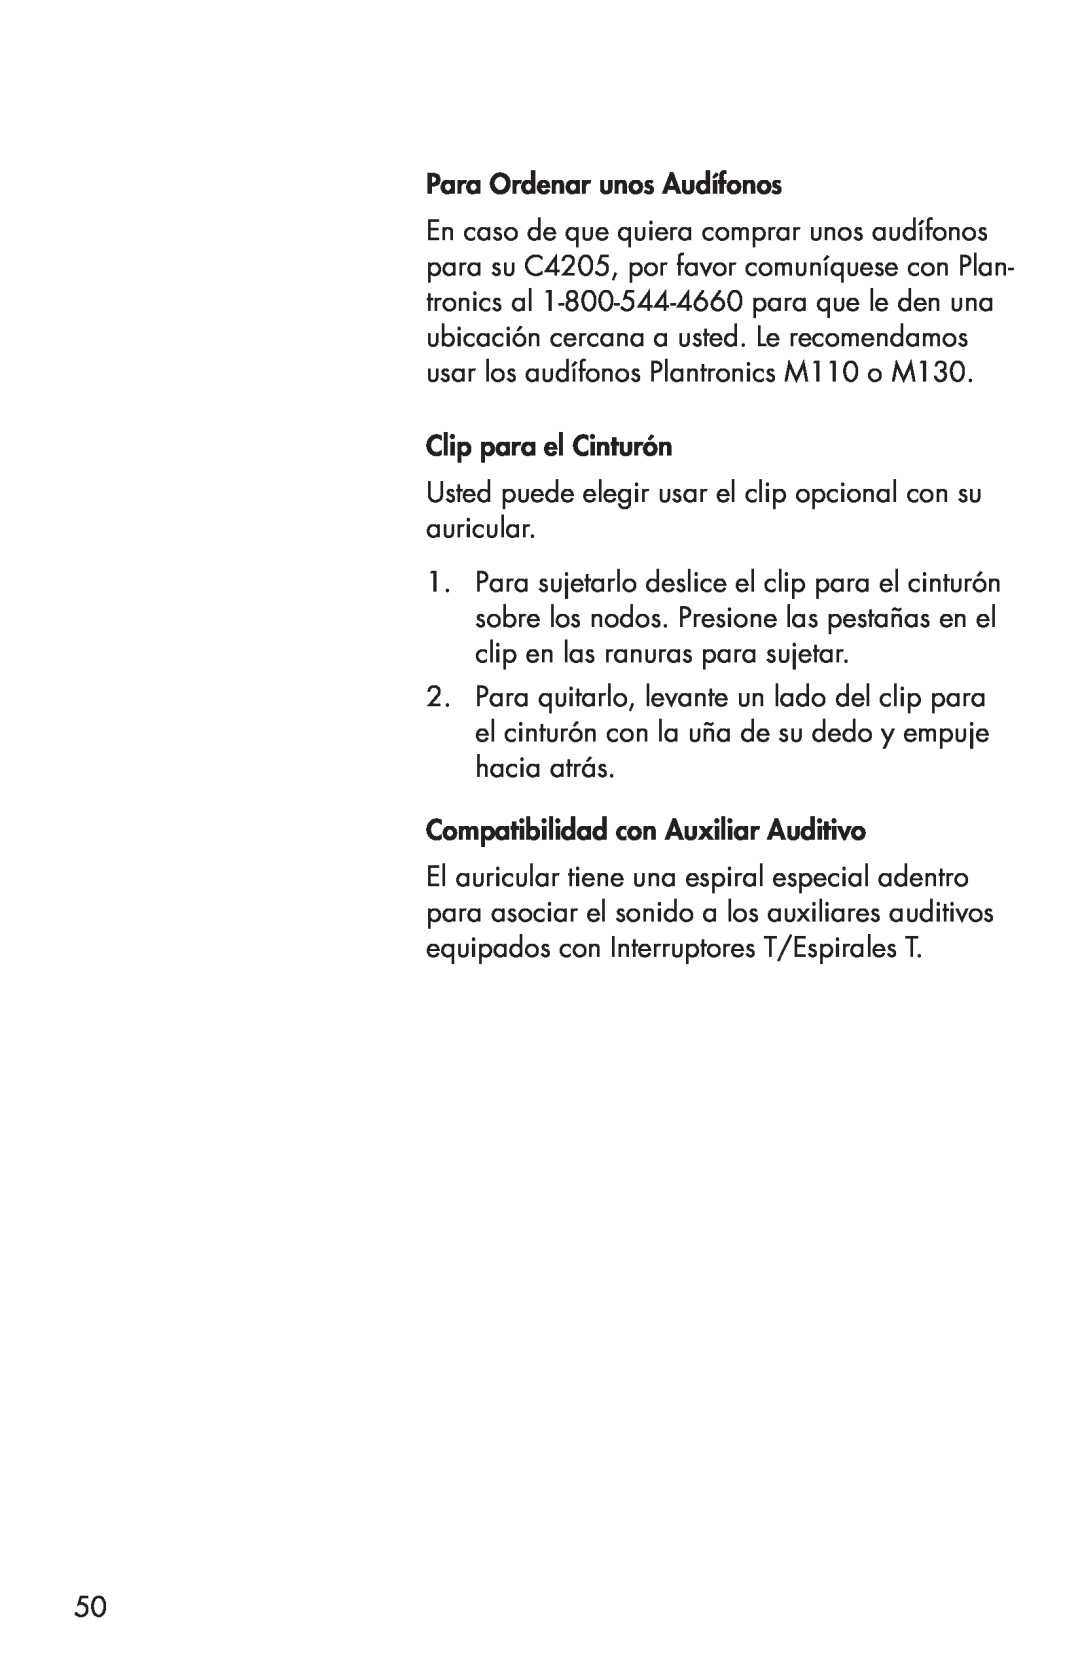 Clarity C4205 manual Para Ordenar unos Audífonos, Clip para el Cinturón, Compatibilidad con Auxiliar Auditivo 